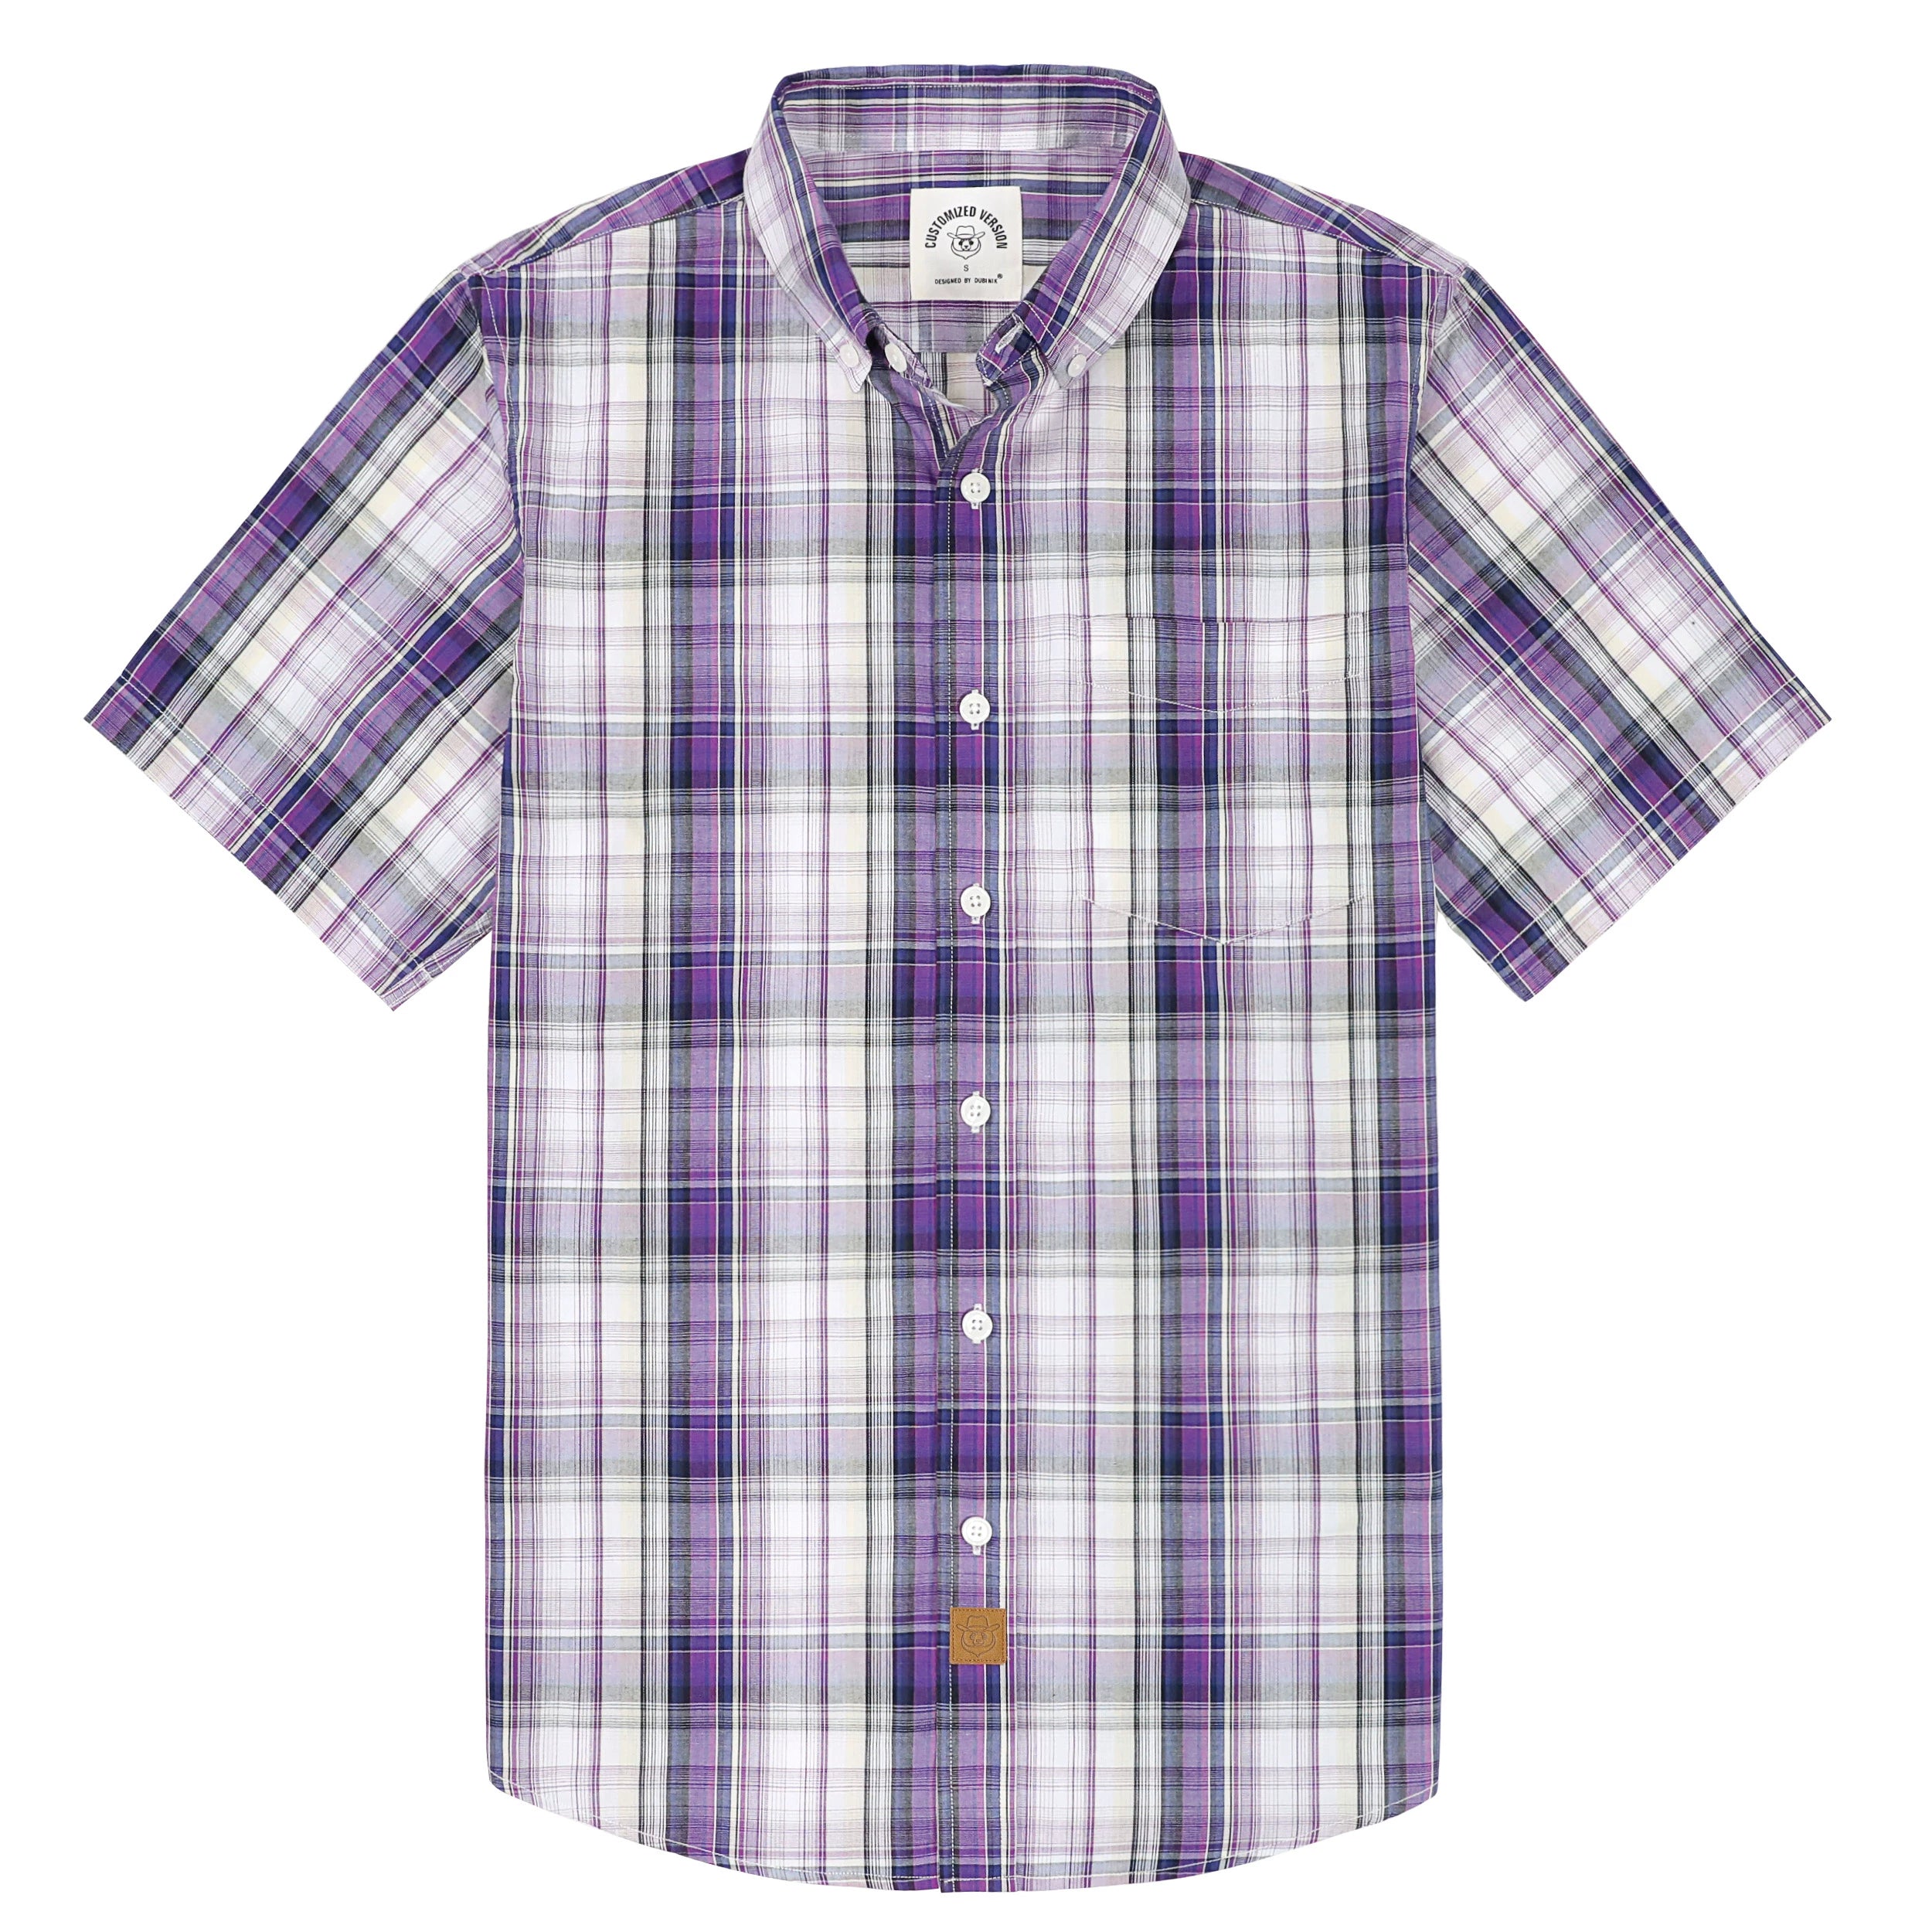 Dubinik® Mens Short Sleeve Button Down Shirts Summer Vintage Short Sleeve Button Down Men Lightweight Men's Casual Shirts#51008